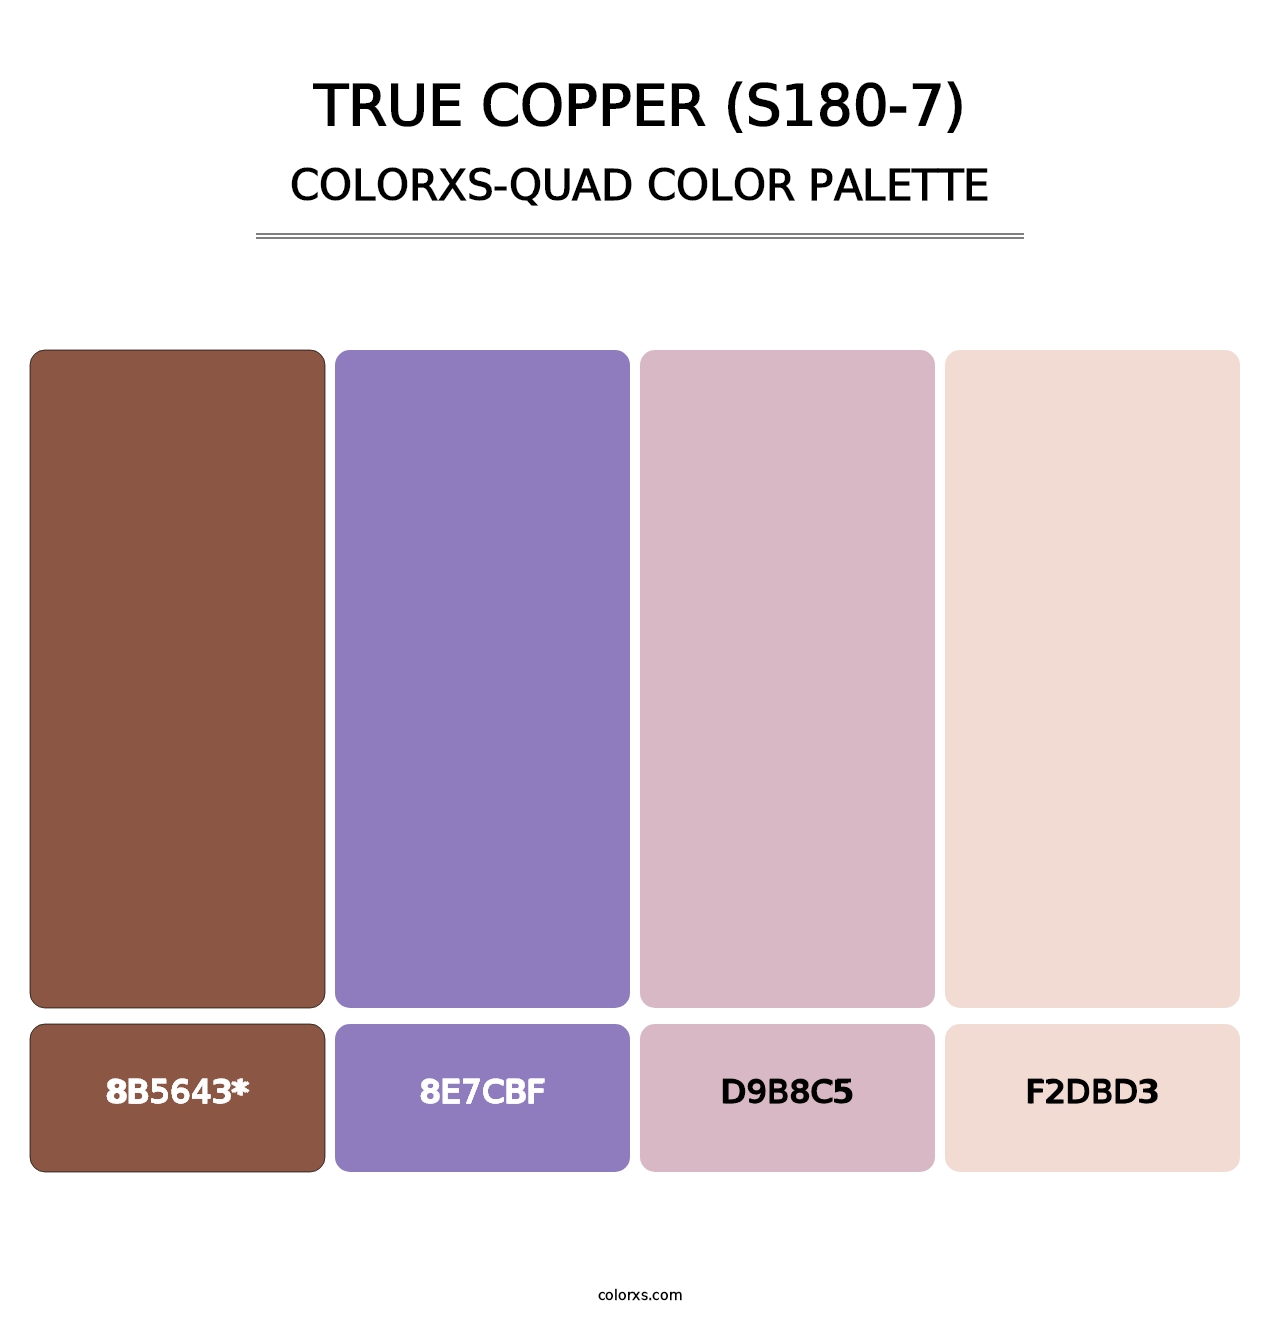 True Copper (S180-7) - Colorxs Quad Palette